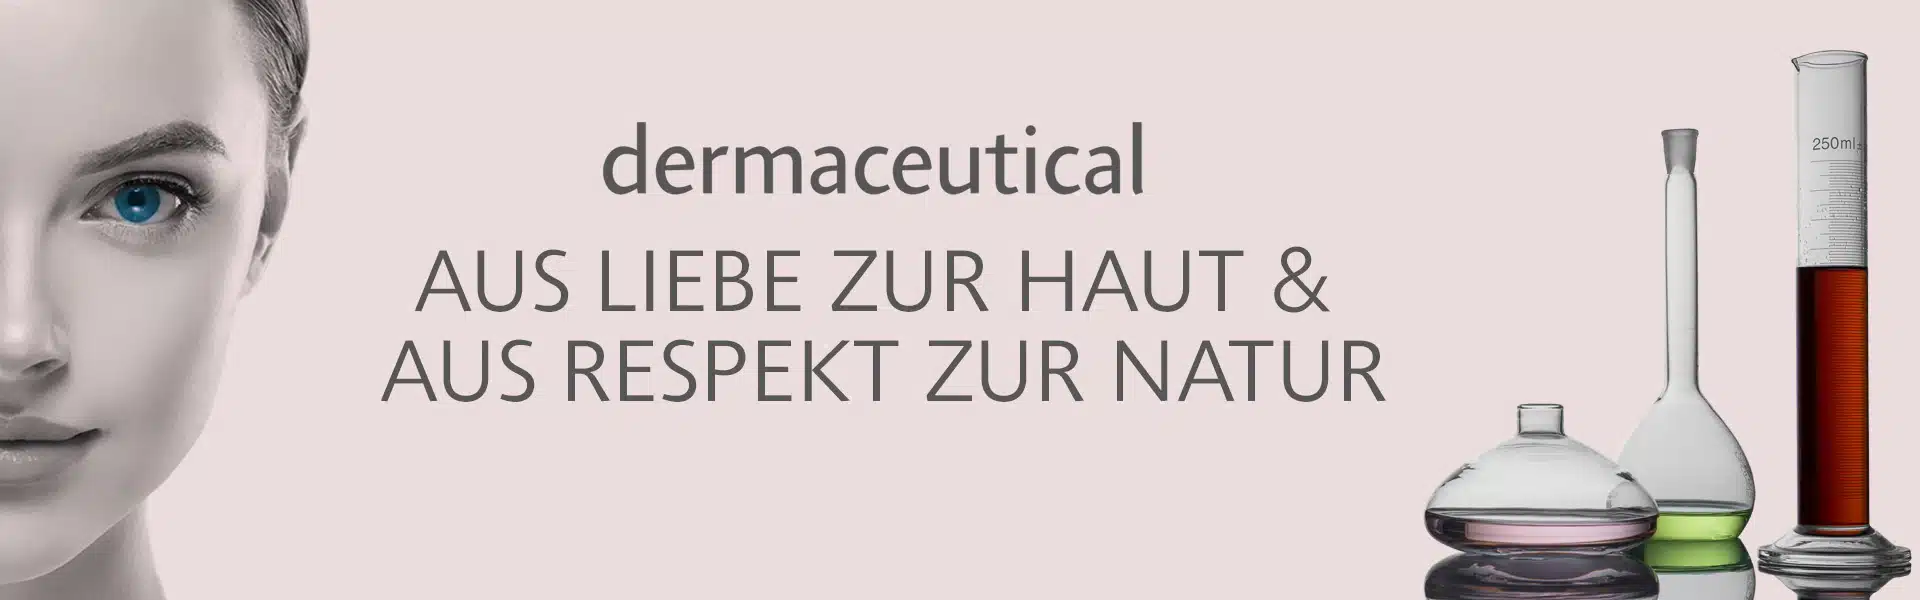 dermaceutical cosmetics